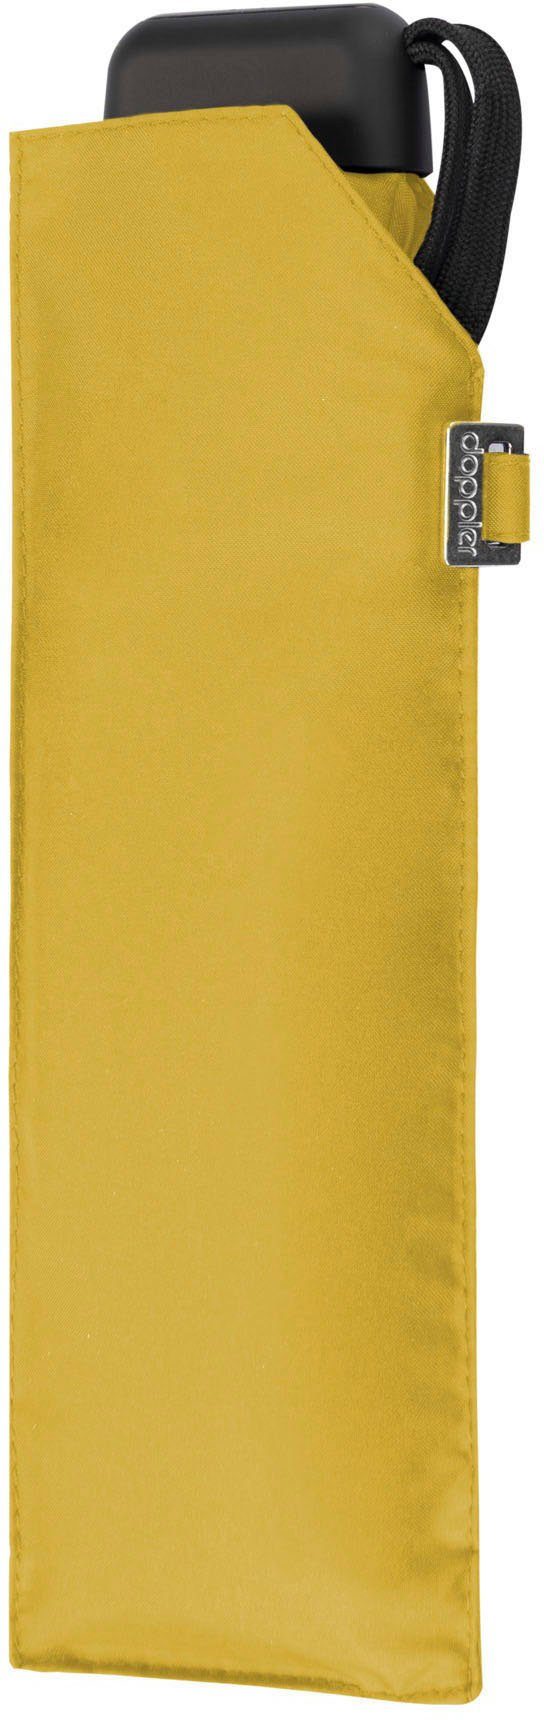 Taschenregenschirm Carbonsteel Slim yellow doppler® uni, shiny